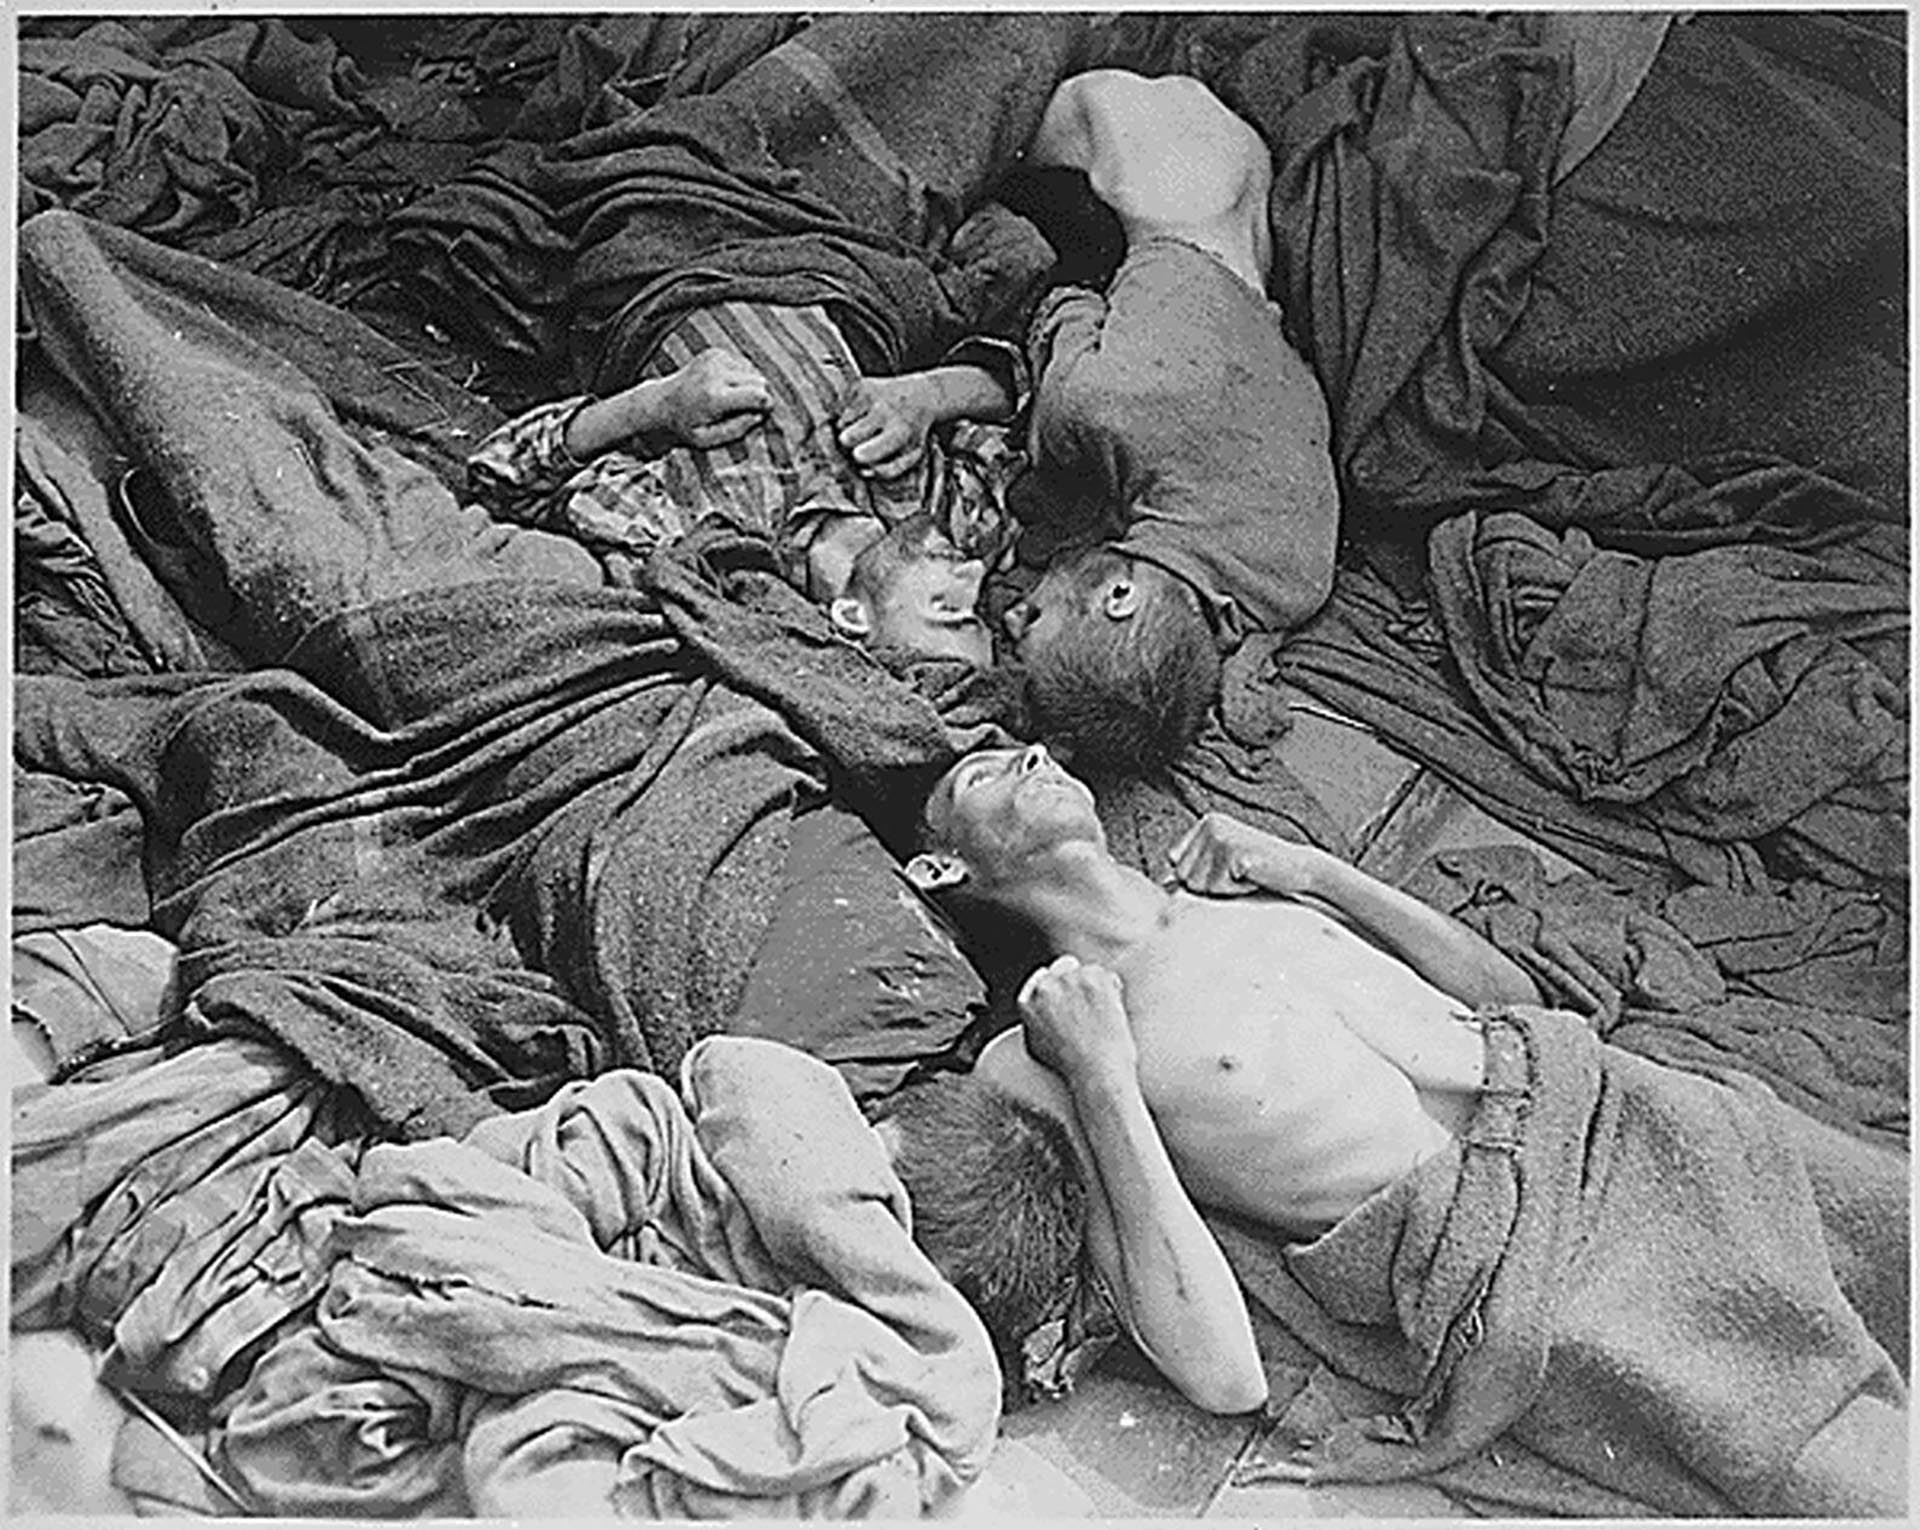 Los cuerpos convertidos en esqueletos de prisioneros eran transportados a Dachau desde otro campo de concentración y yacían grotescamente mientras morían en el camino (Danvis Collection)
